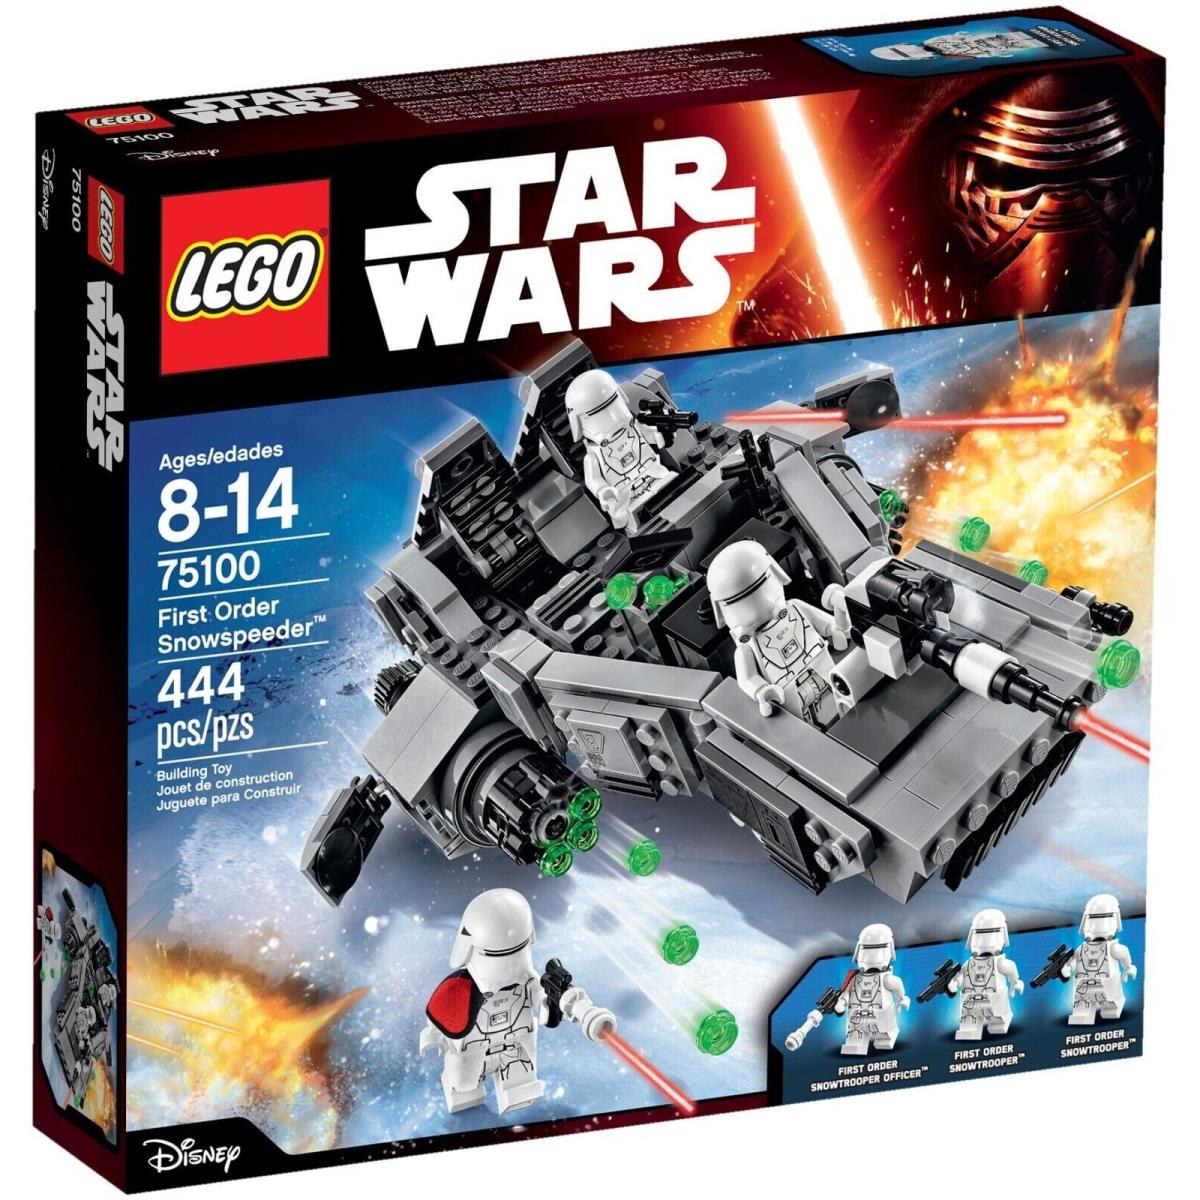 Lego Star Wars 75100 First Order Snowspeeder -new